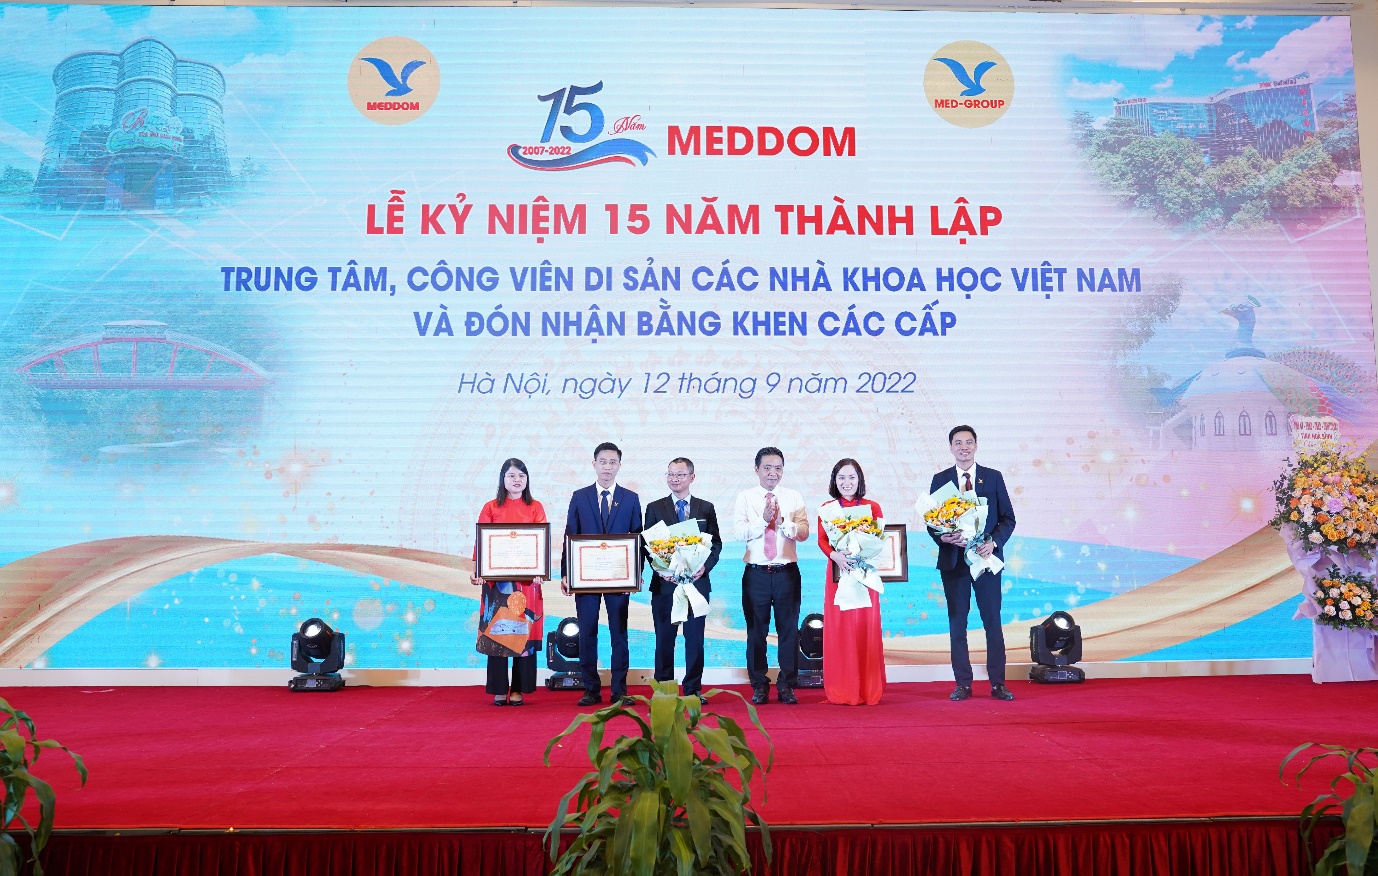 Công viên Di sản các nhà khoa học Việt kỷ niệm 15 năm thành lập - 3